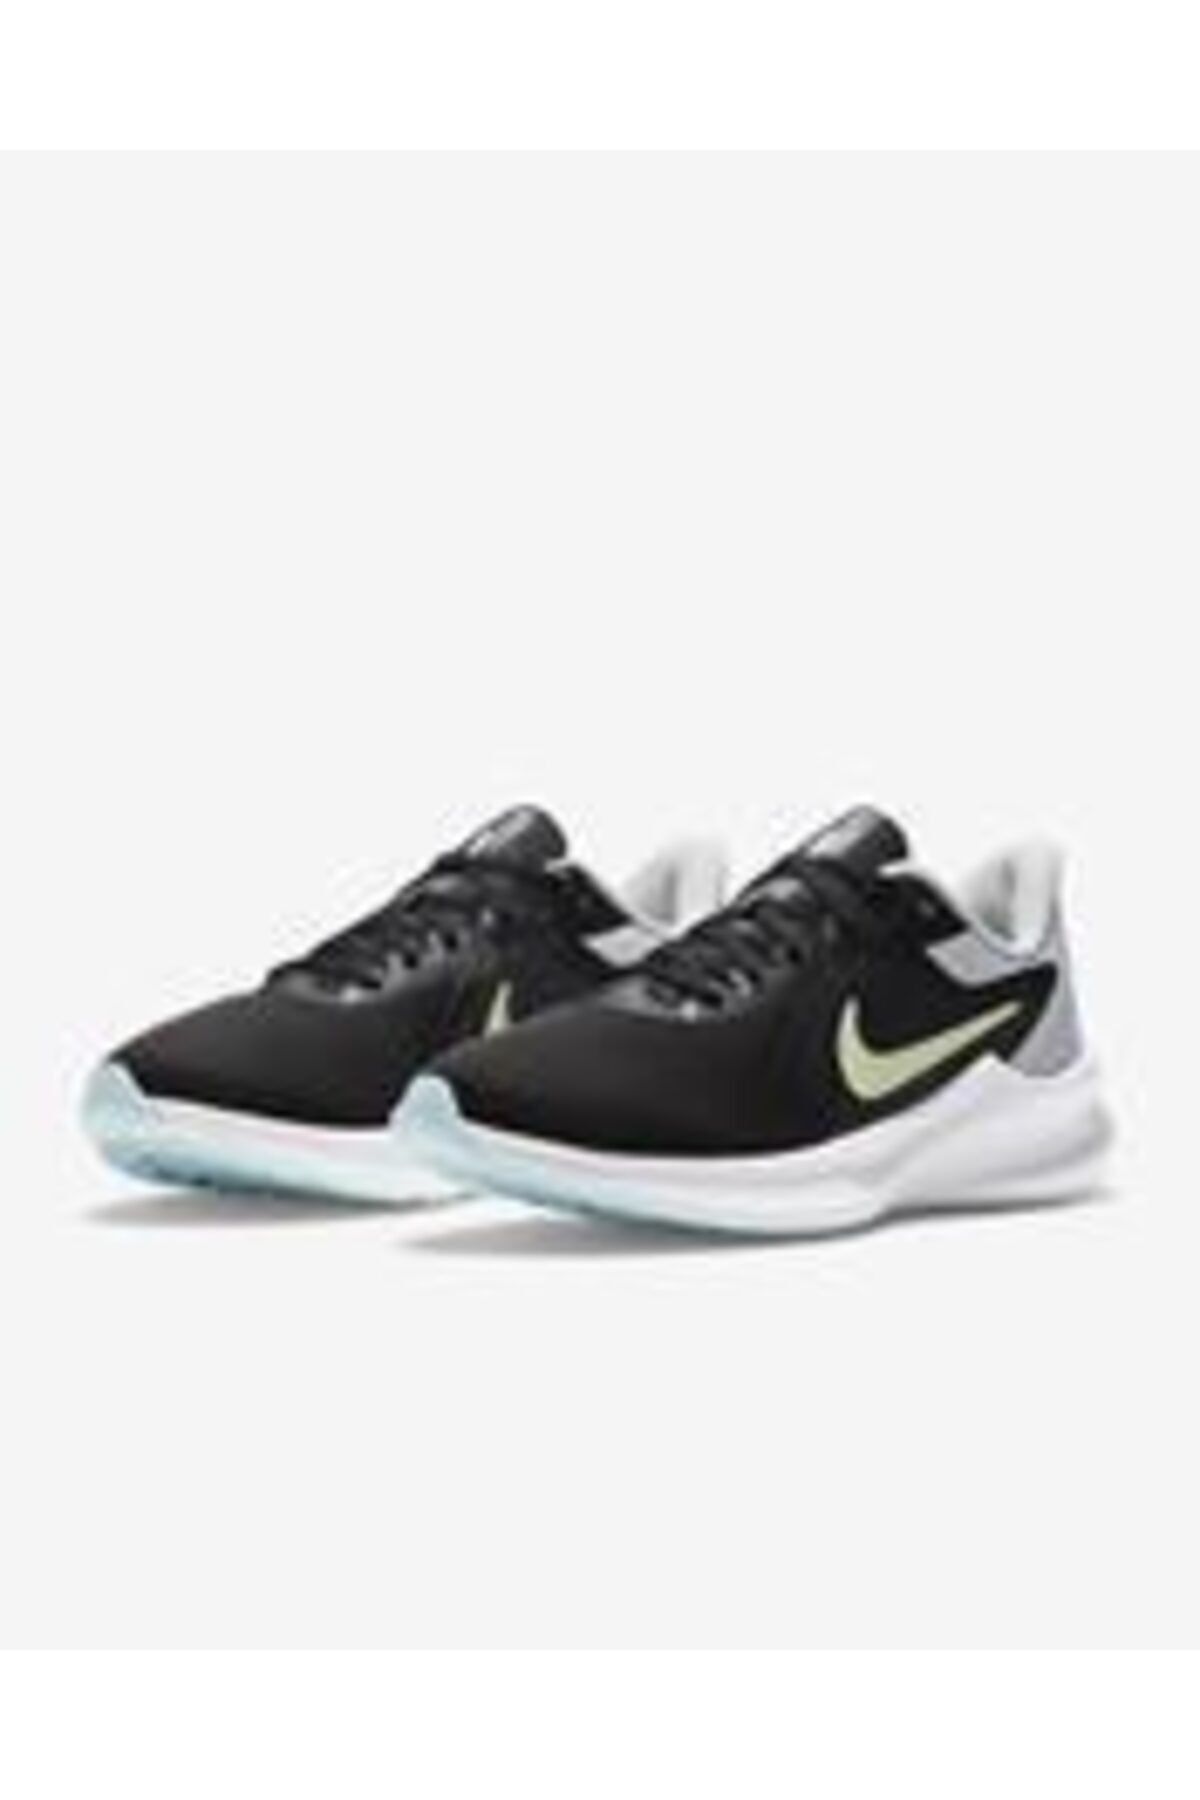 Nike Downshıfter Kadın Siyah Koşu Ve Yürüyüş Ayakkabısı Cı9984-005